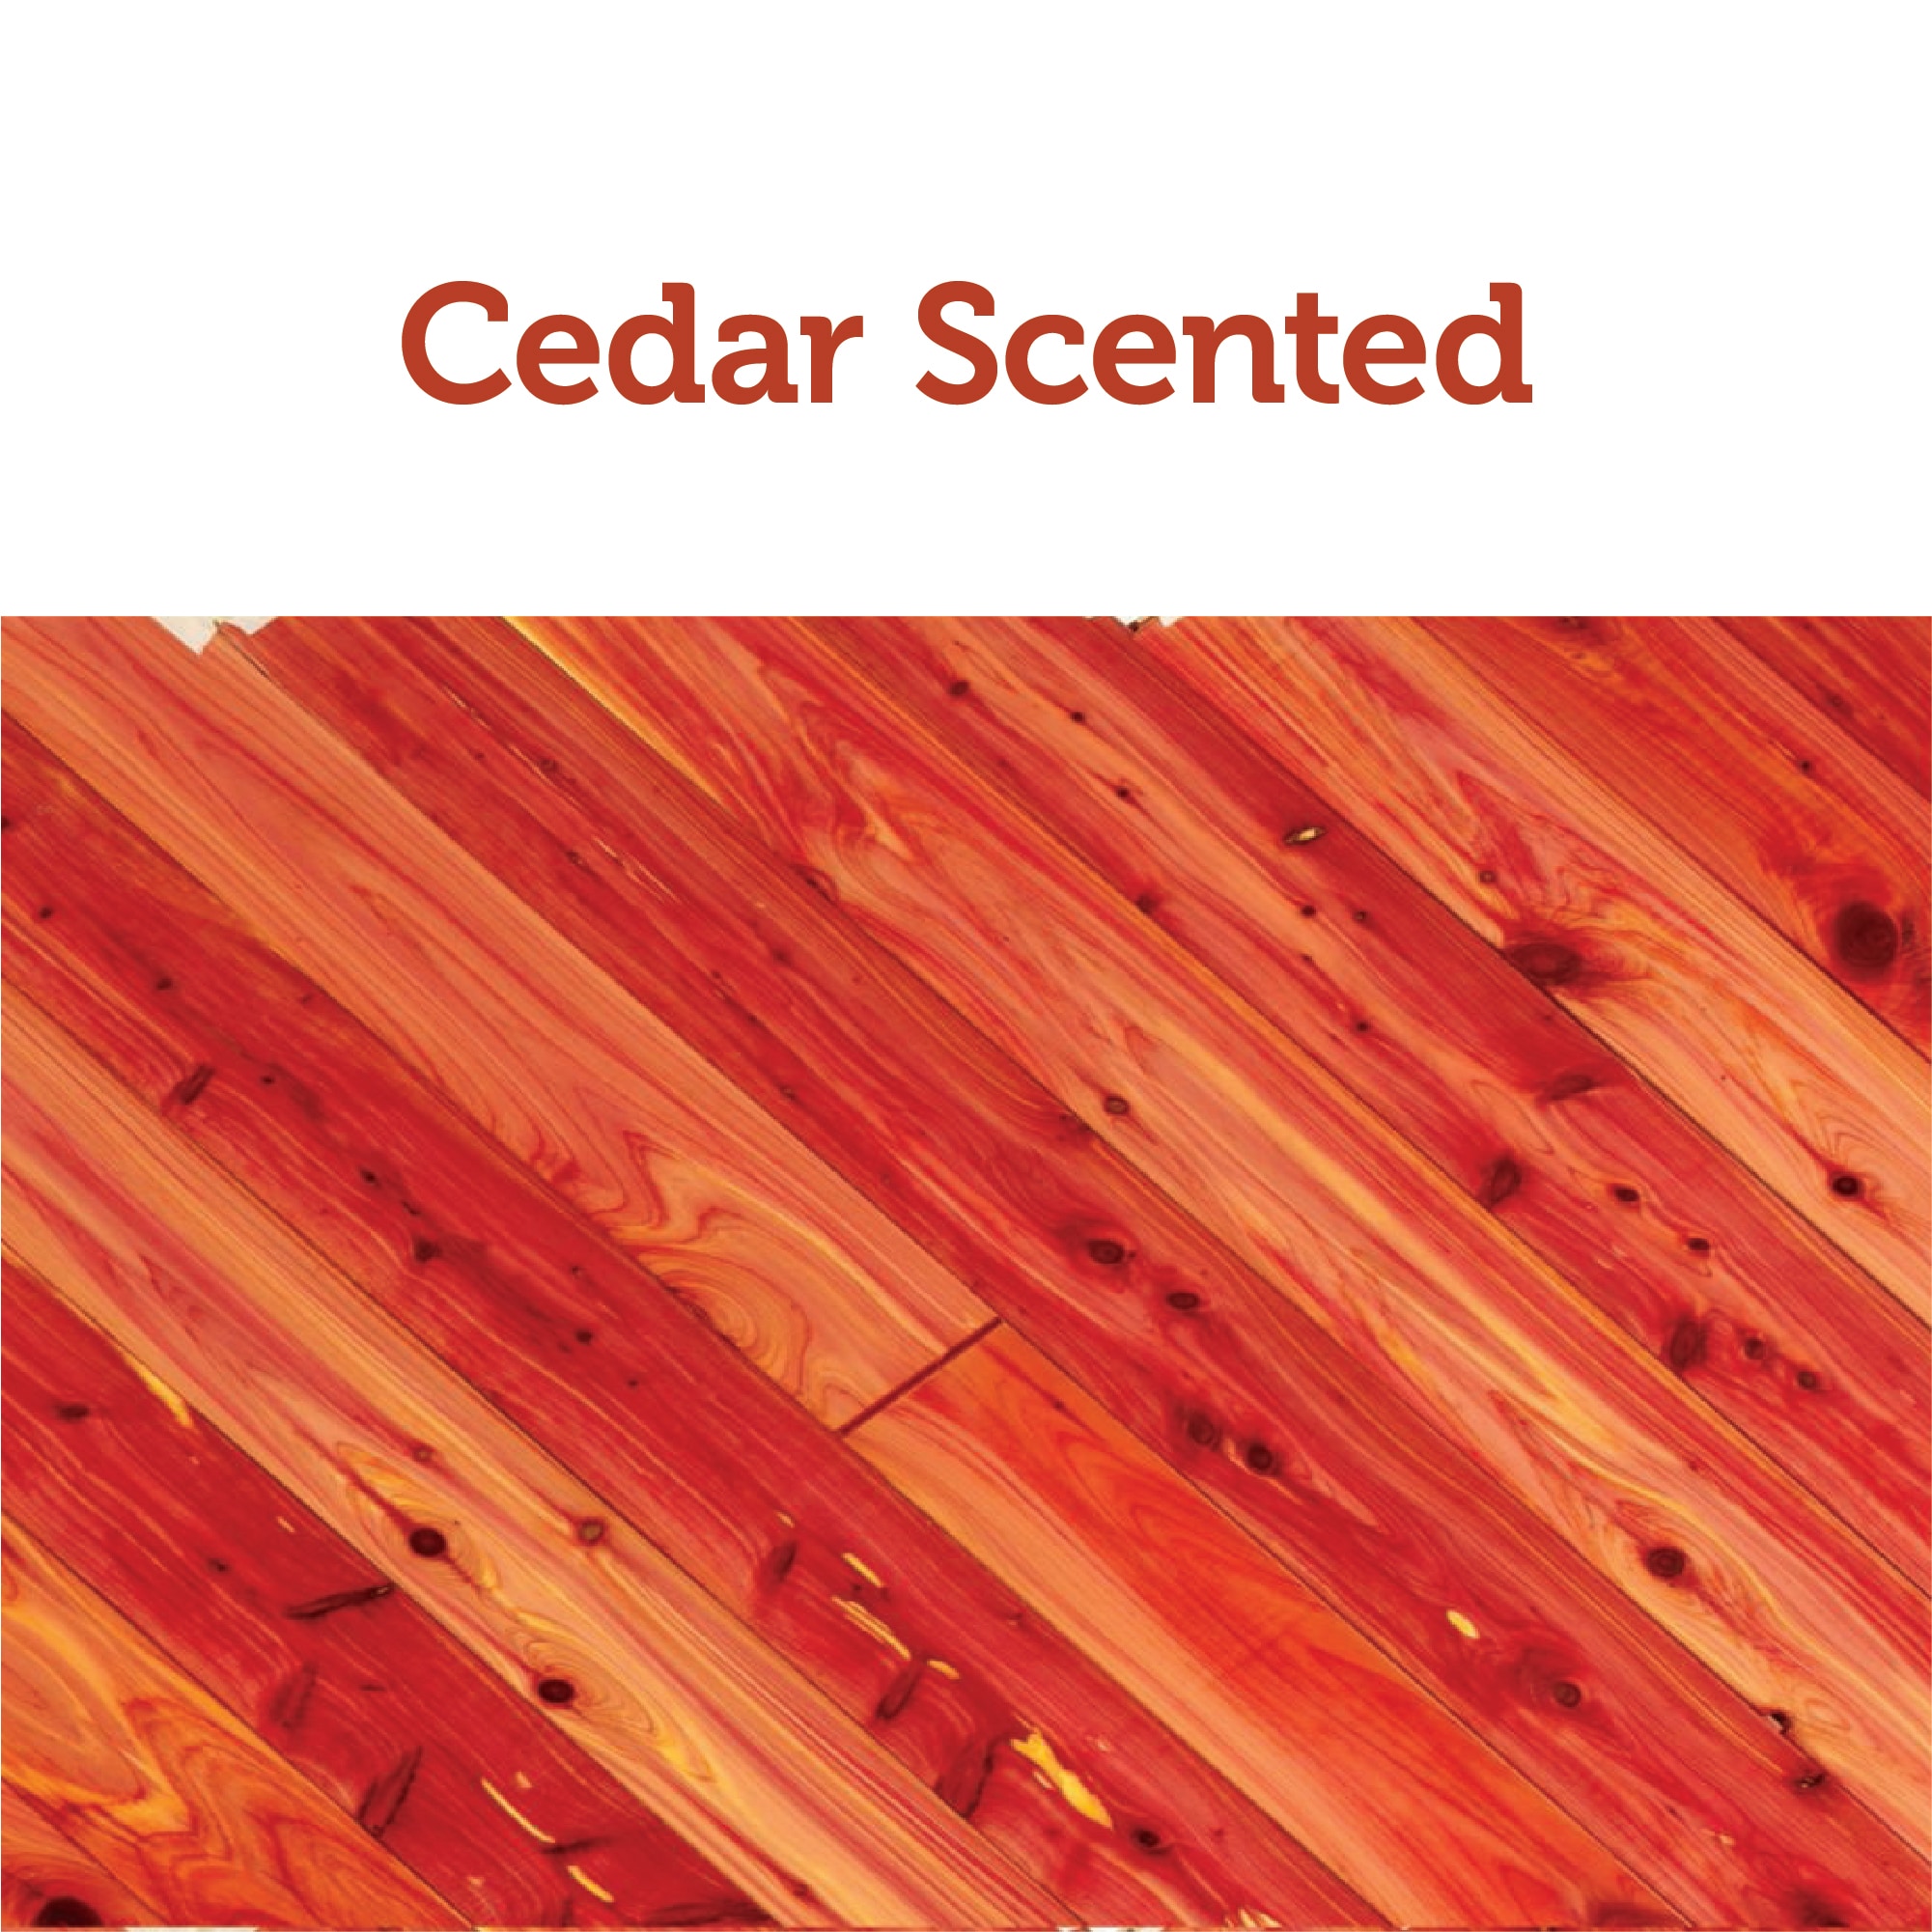 Canada Red Cedar Moth Balls